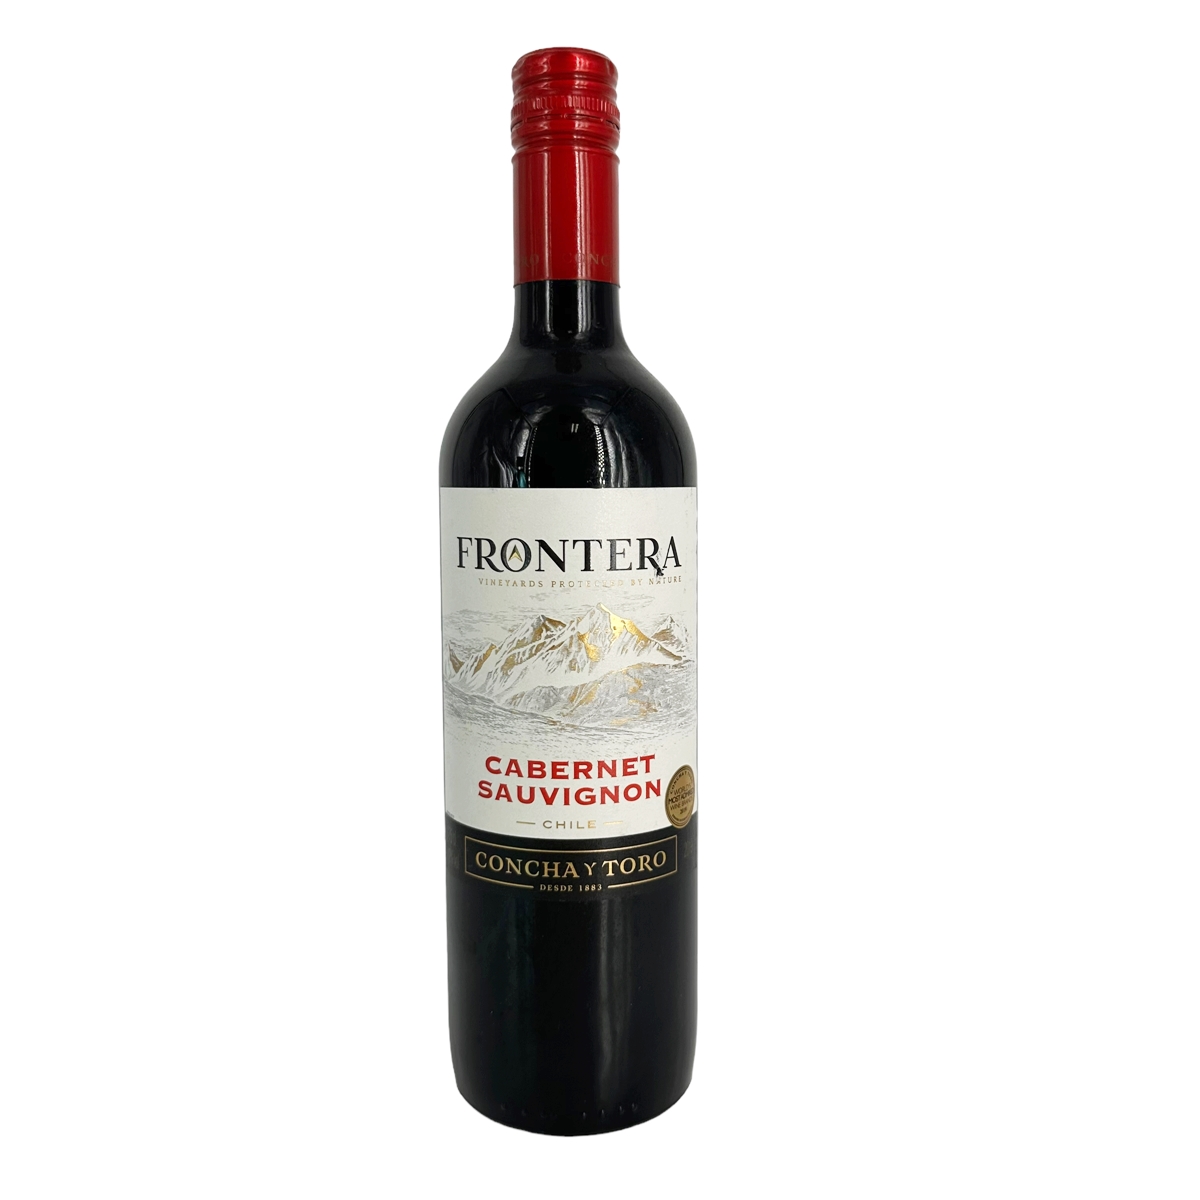 CONCHA Y TORO コンチャ・イ・トロ フロンテラ カベルネ・ソーヴィニヨン NV 750mlびん 1本 FRONTERA ワイン 赤ワインの商品画像